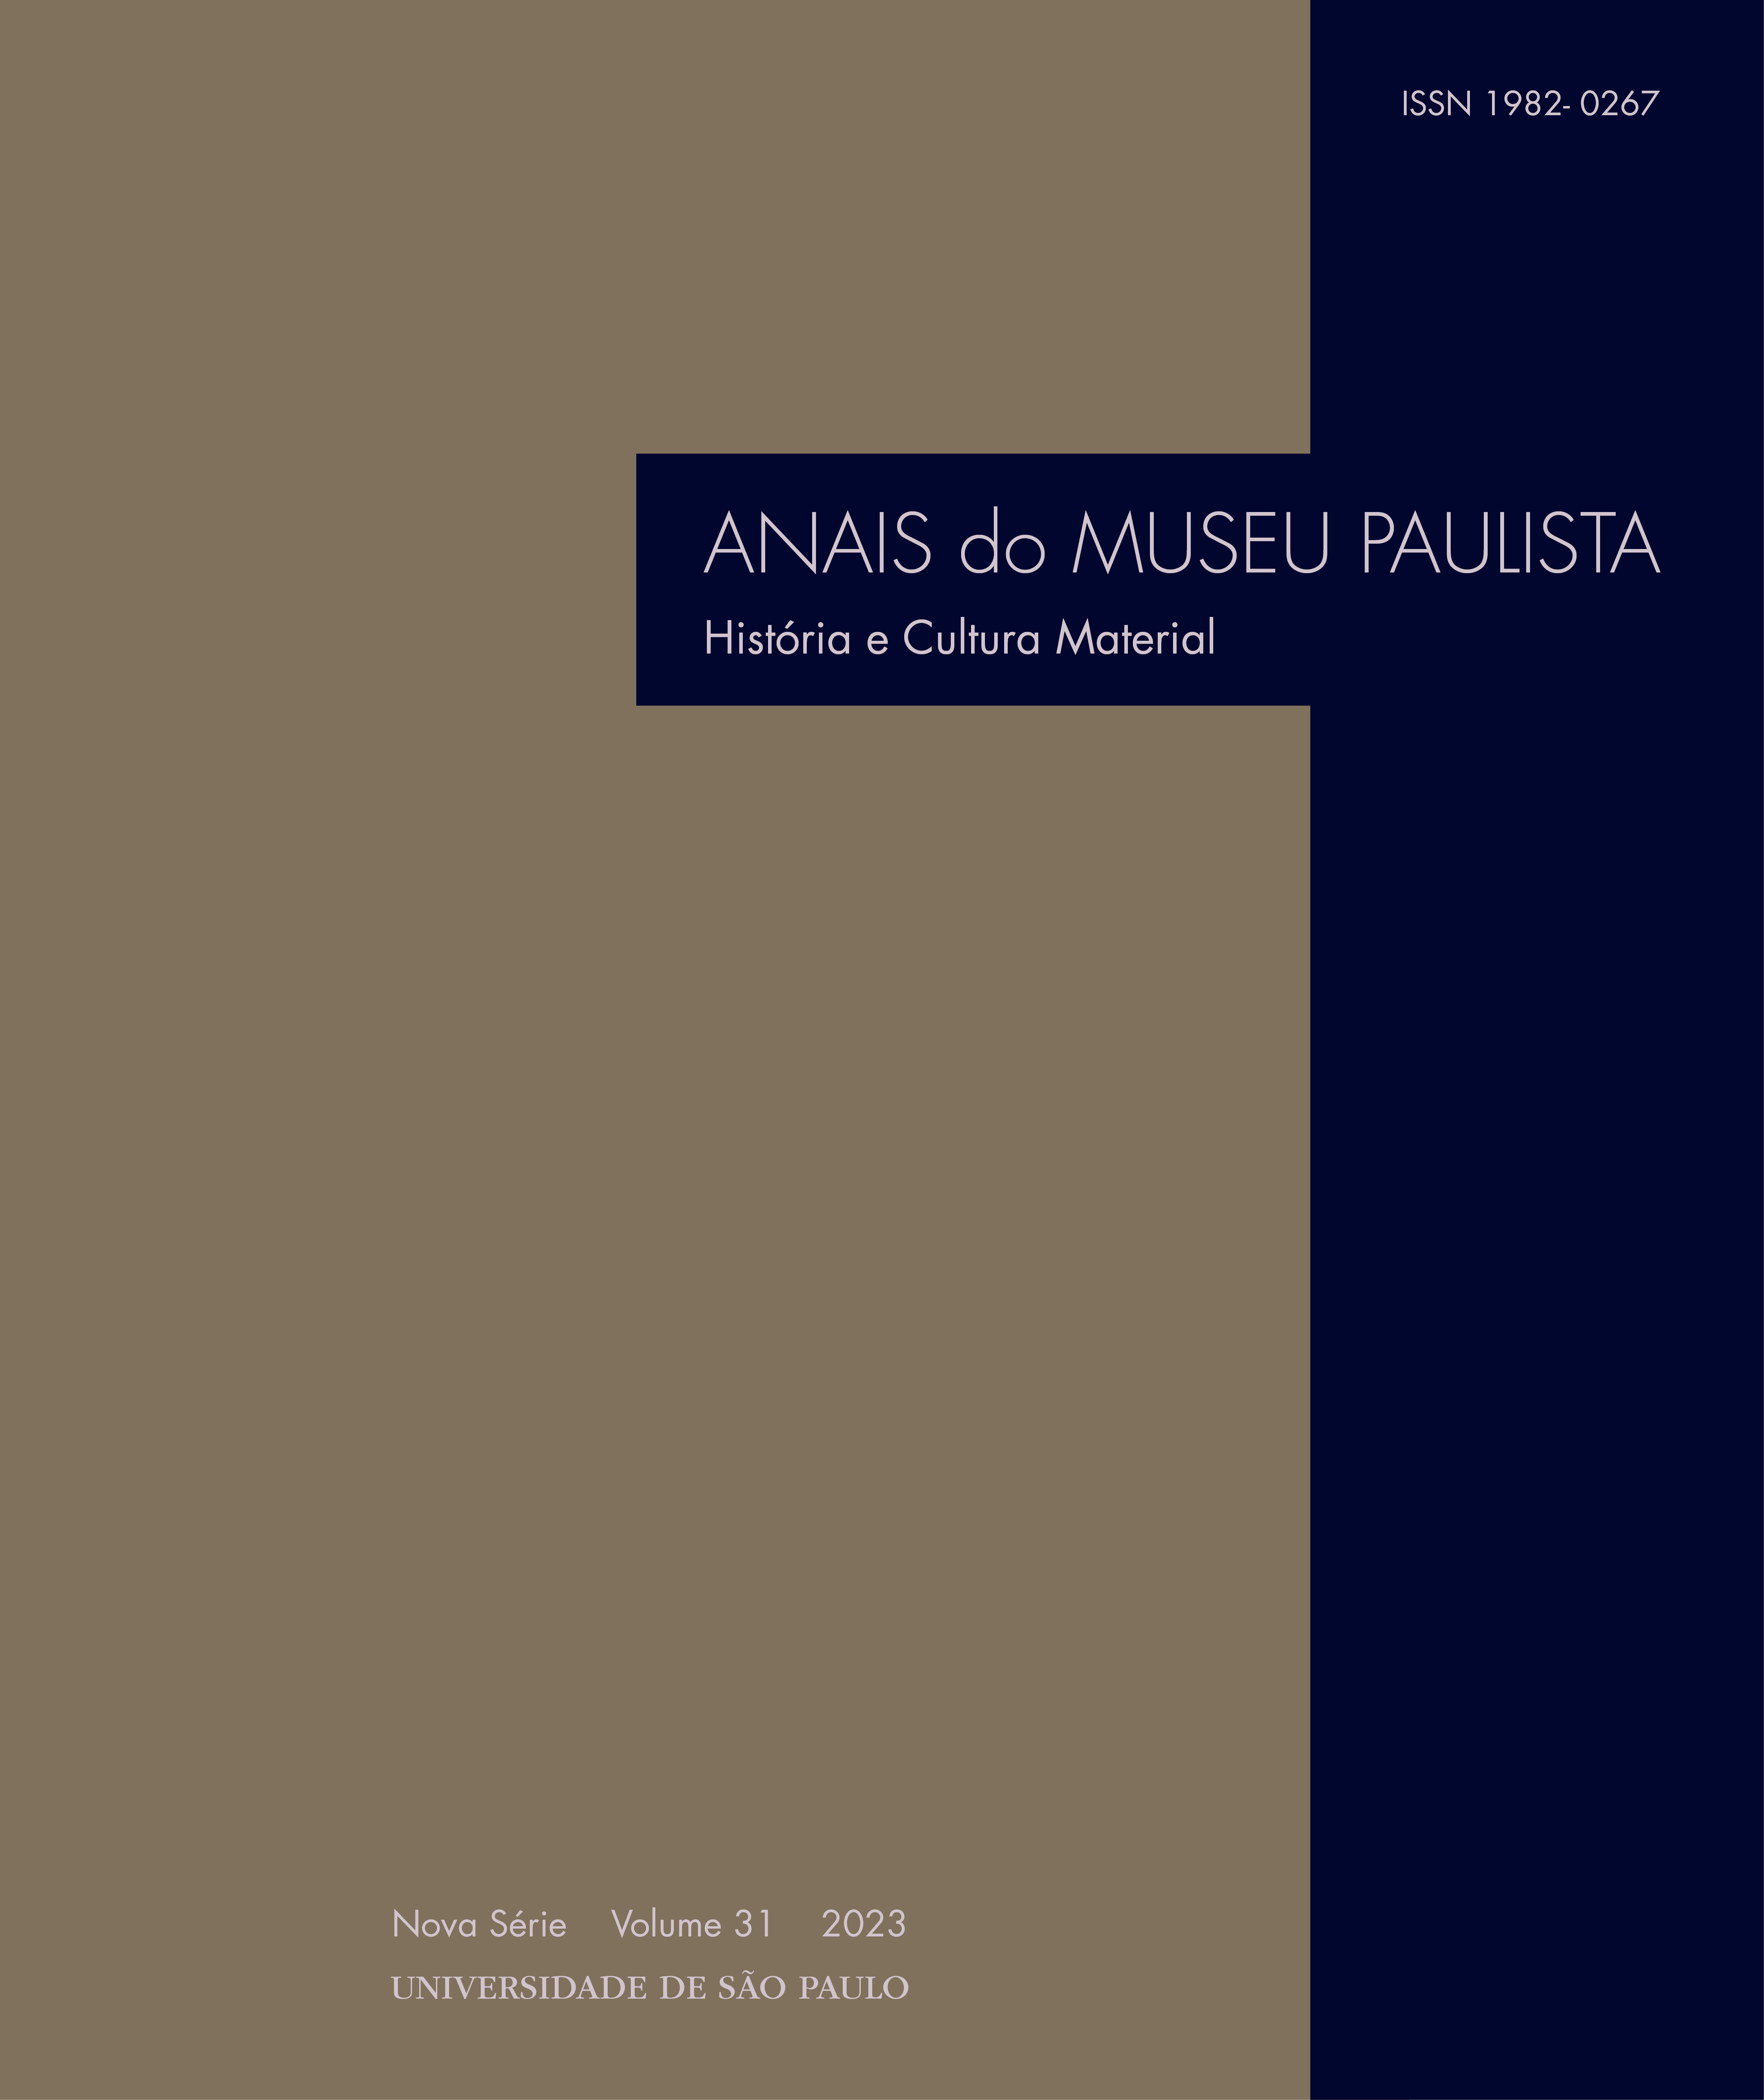 Celia Maria Marinho de Azevedo - Abolicionismo - Estados Unidos e Brasil,  Uma História Comparada (Século XIX) - Annablume (2003), PDF, Escravidão